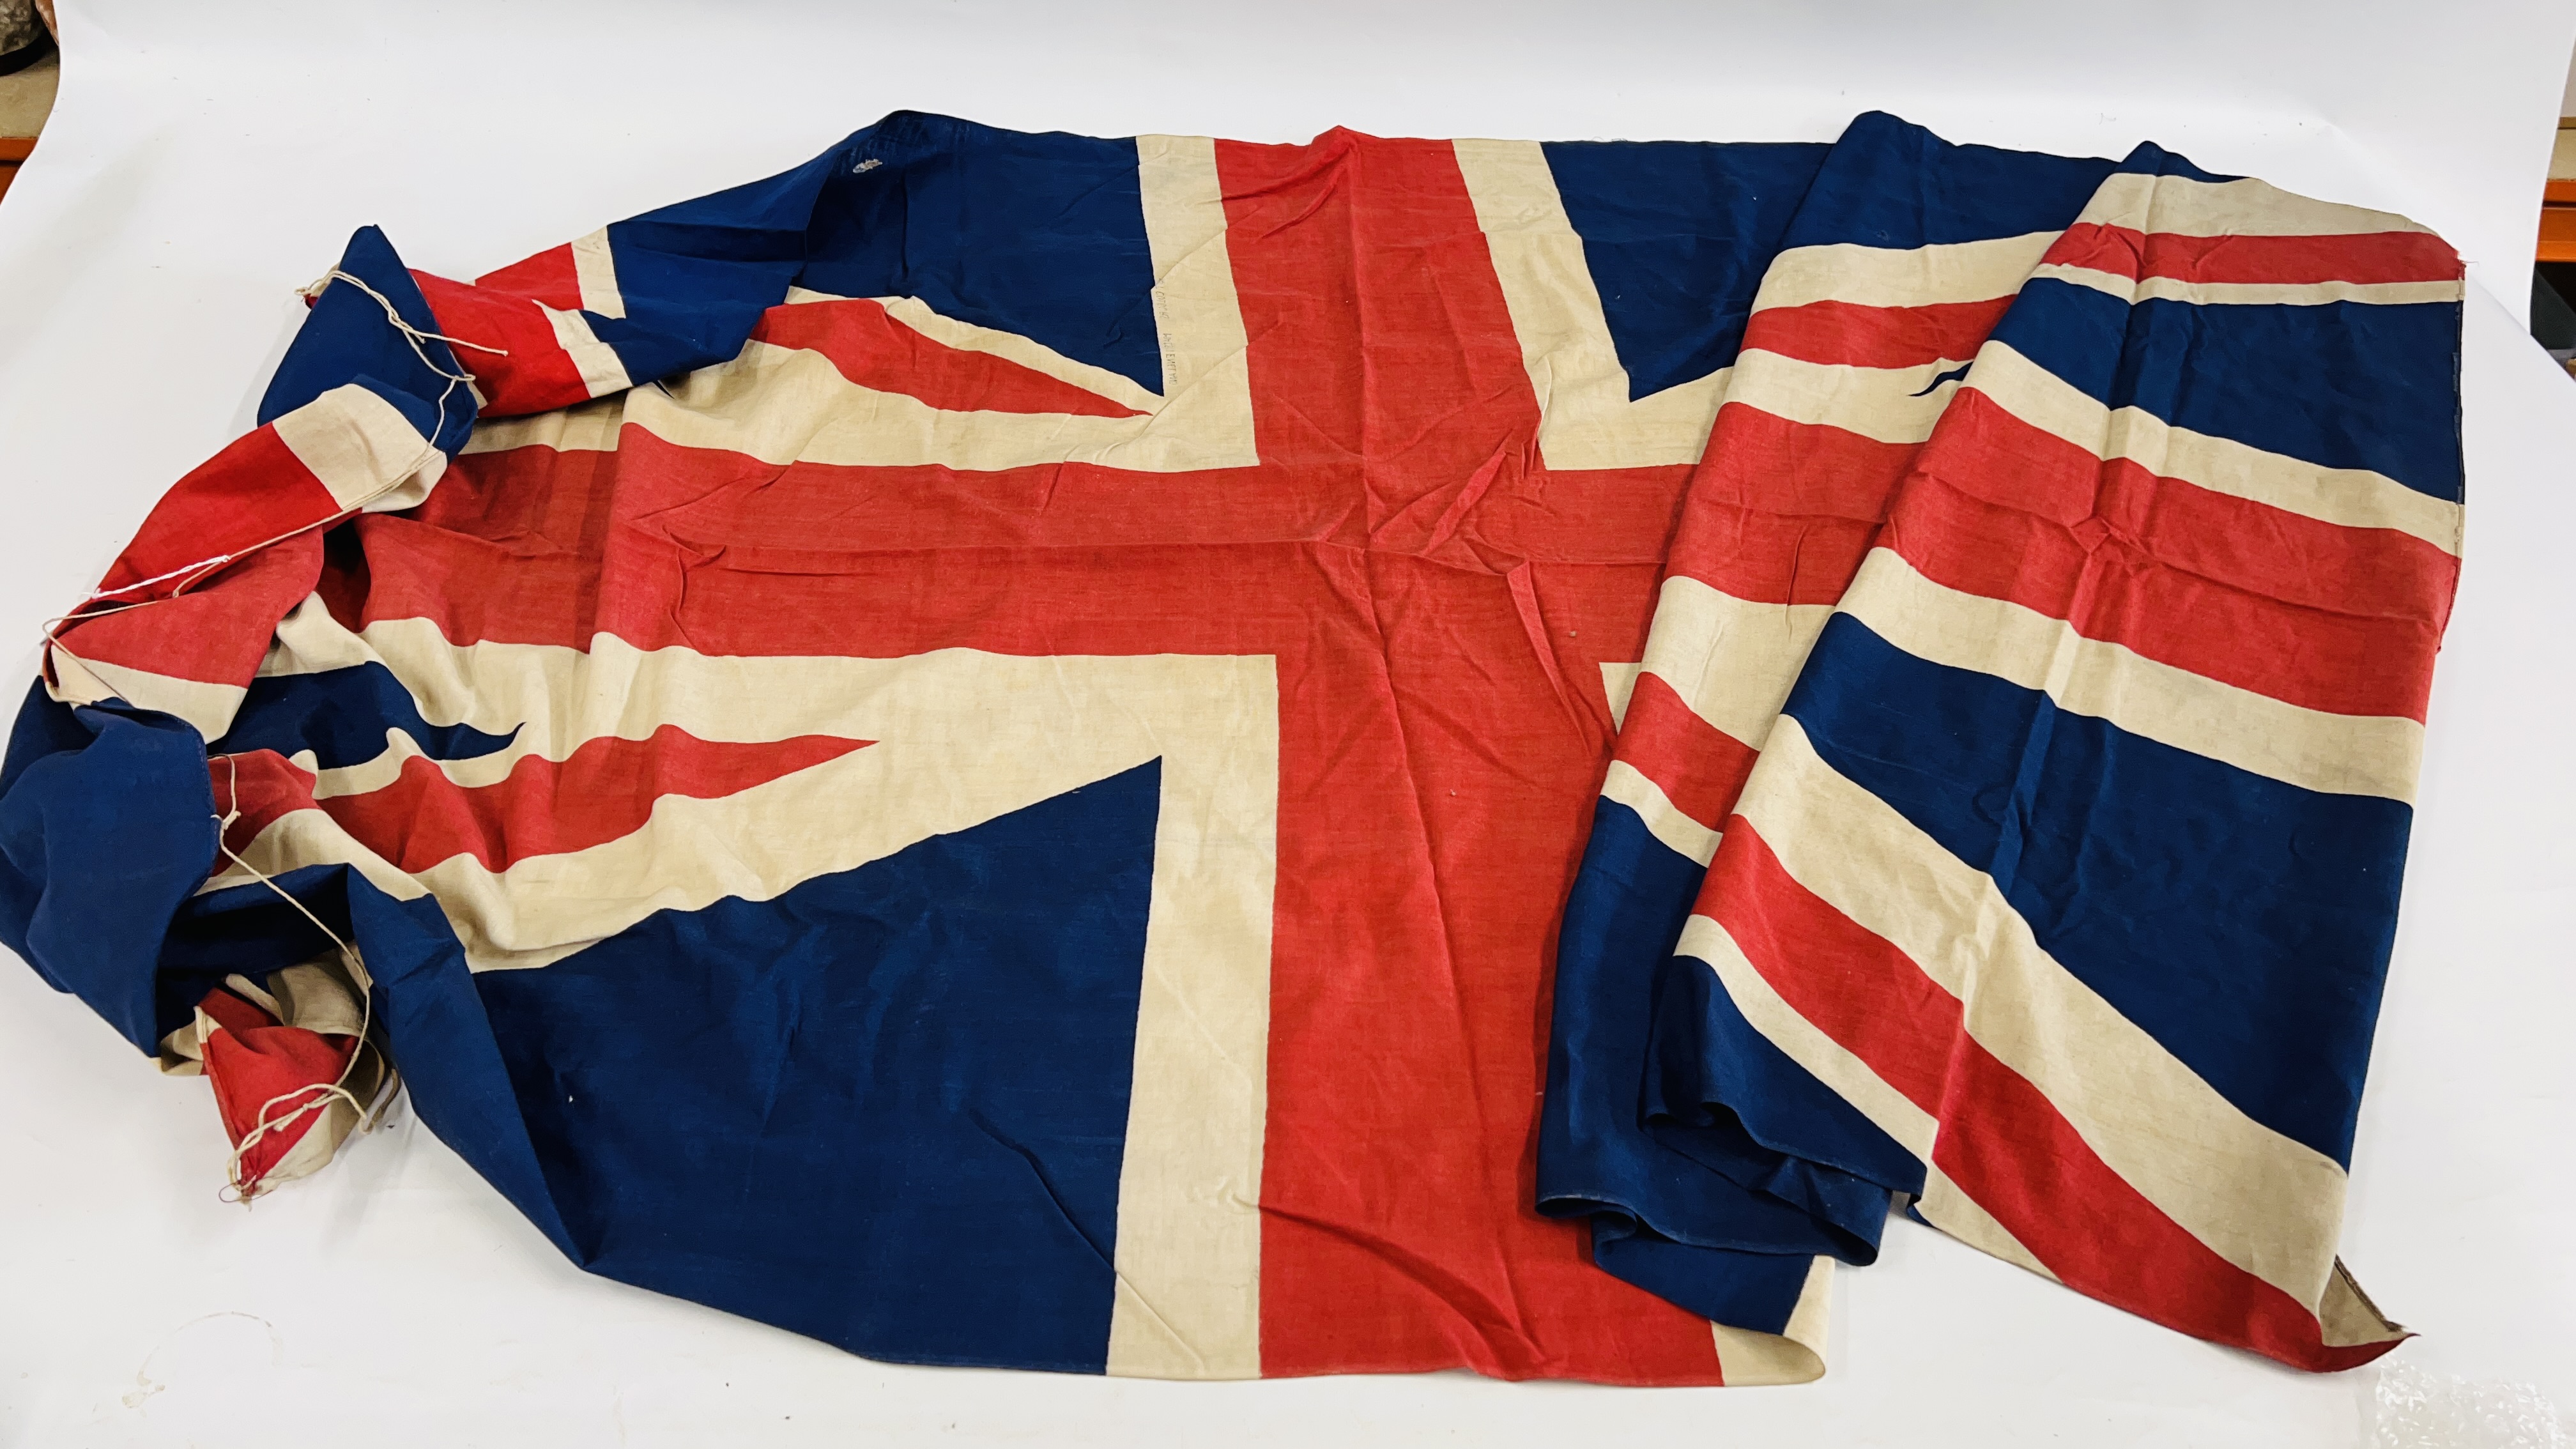 A LARGE VINTAGE BRITISH UNION JACK FLAG, 217 X 112CM.